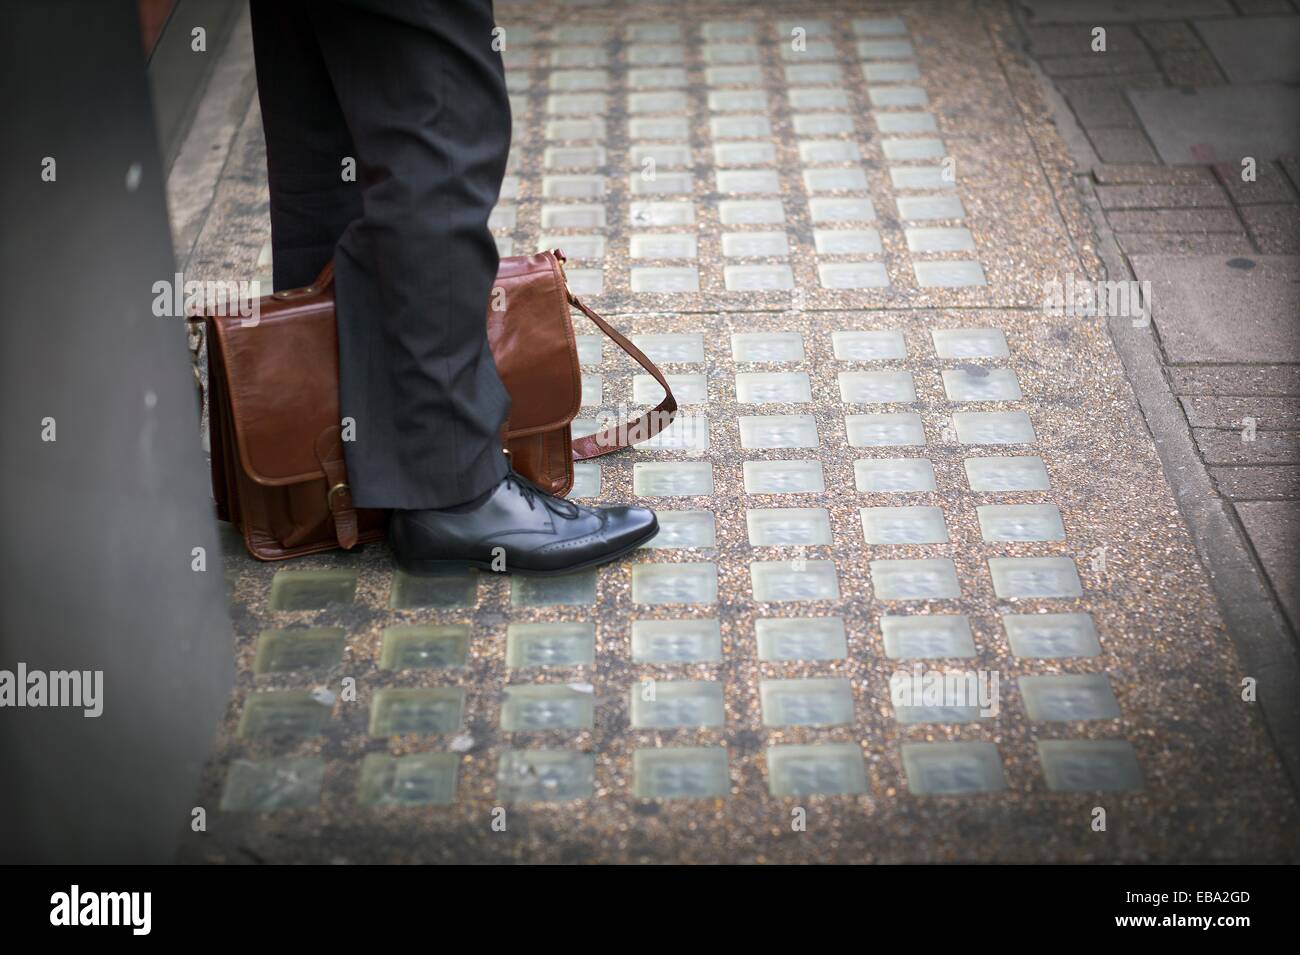 Piernas de hombre con portafolio en la calle esperando, imagen de hombre  esperando con portafolio entre las piernas, imagen Fotografía de stock -  Alamy